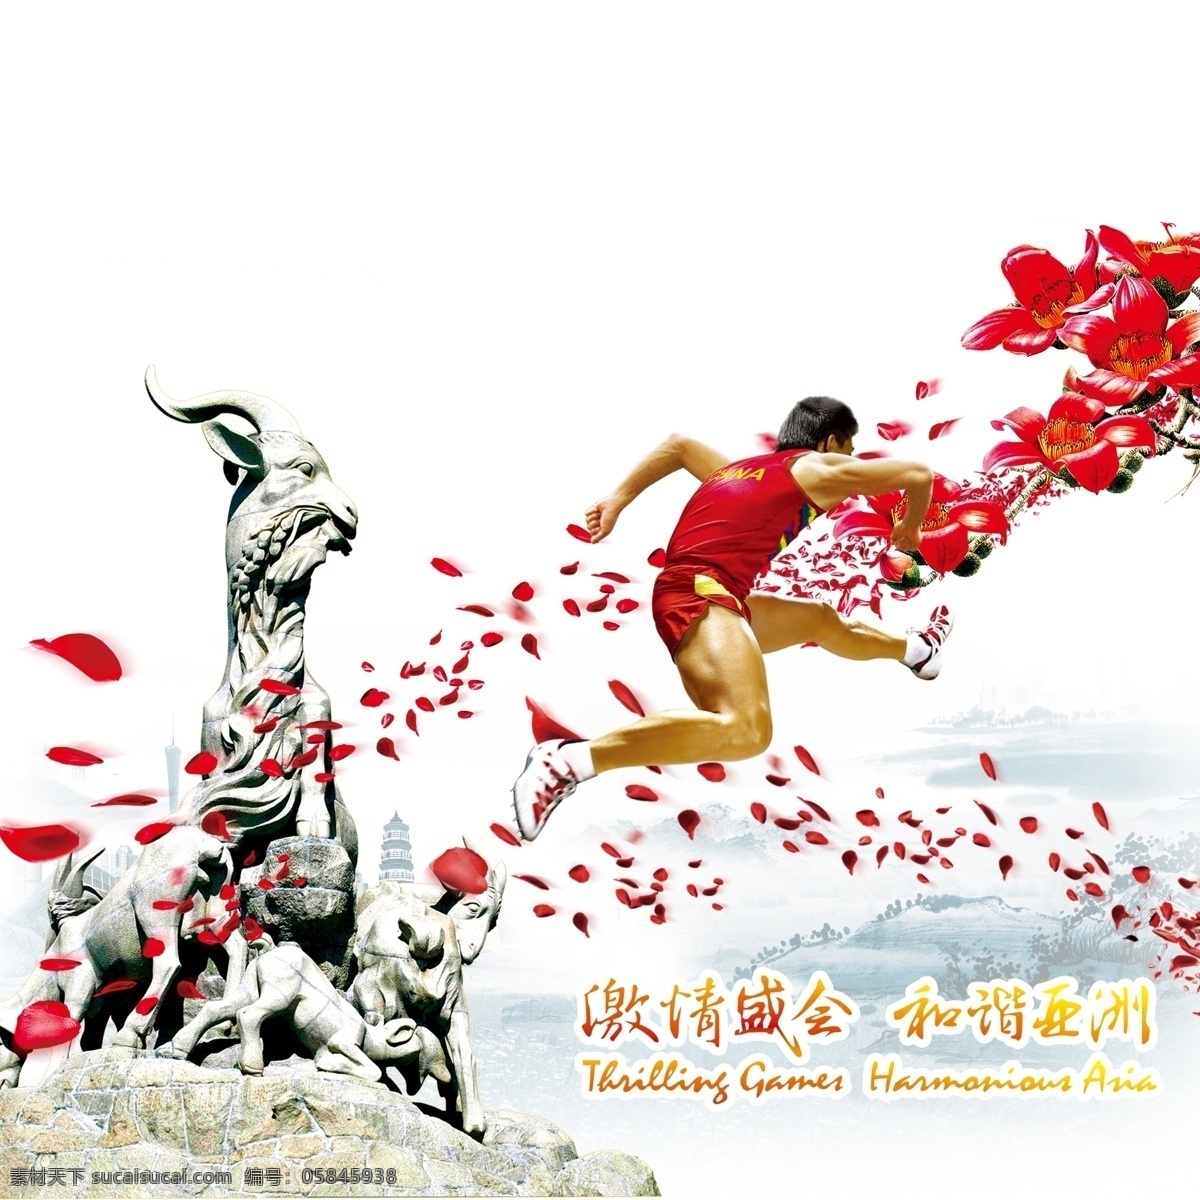 广州亚运 广州五羊标志 运动员 飘落的梅花 广州塔 水墨画 云雾 花瓣 花枝 广告设计模板 源文件